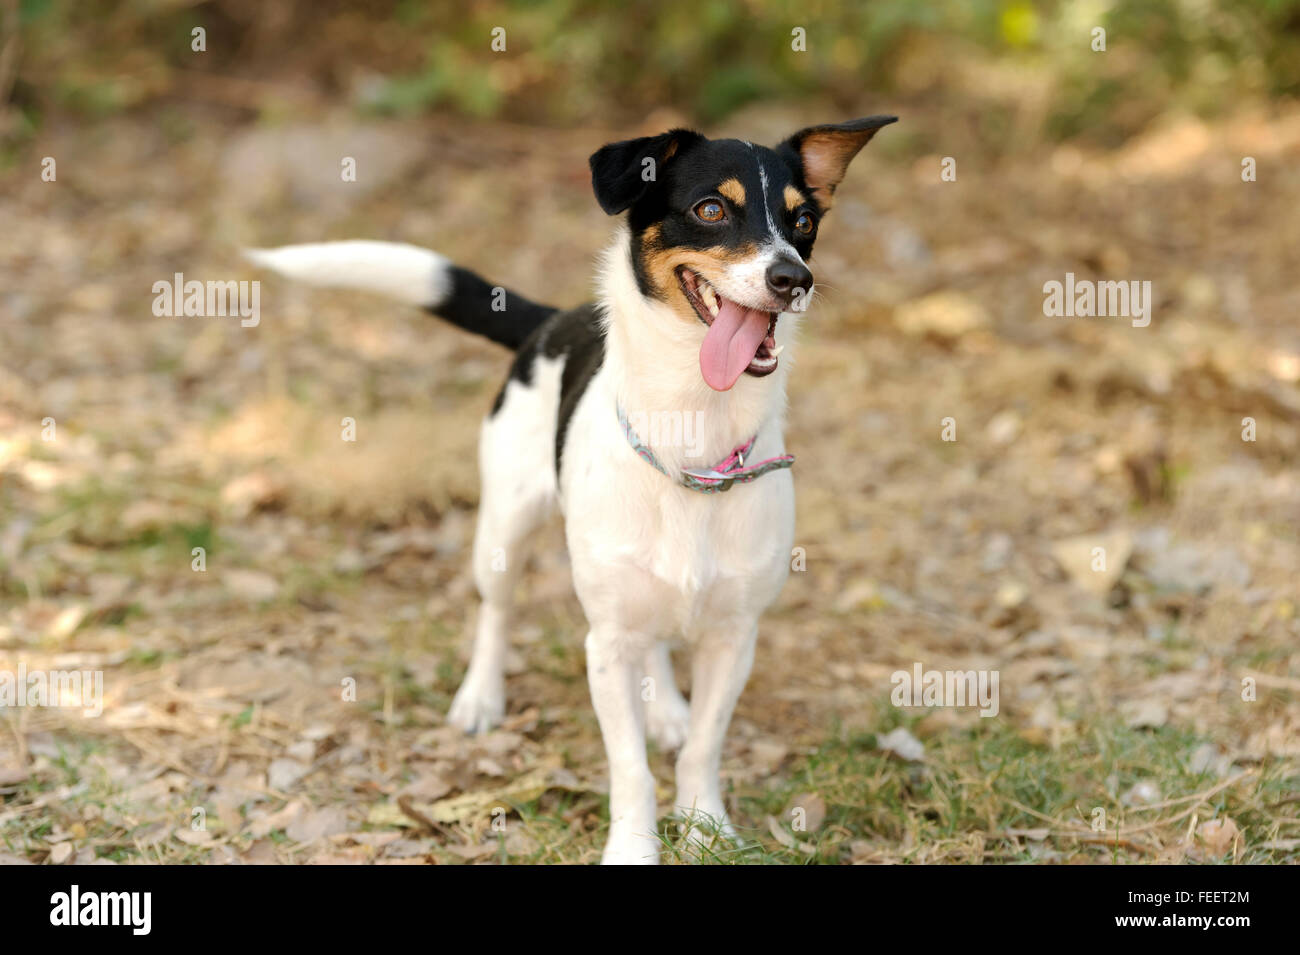 Dumme Hund ist ein netter glücklich kleine Welpen Hund im Freien suchen, lustig und albern mit Kulleraugen und seine Zunge hängt heraus. Stockfoto